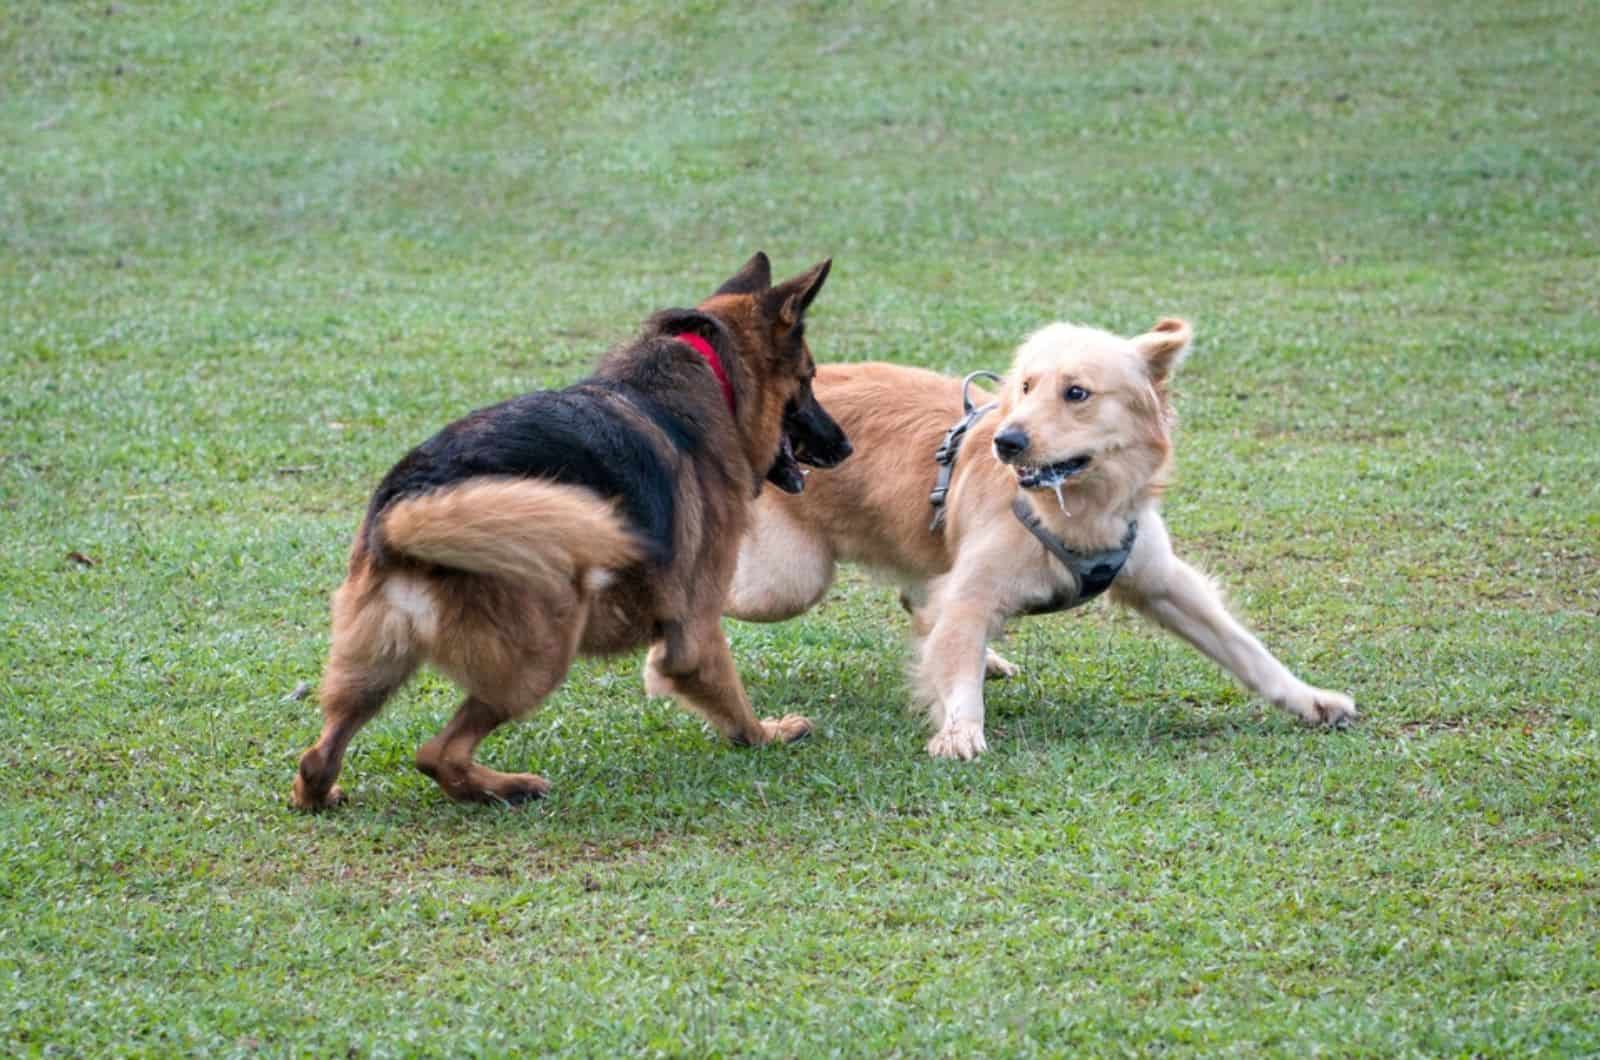 german shepherd and golden retriever fighting in the park